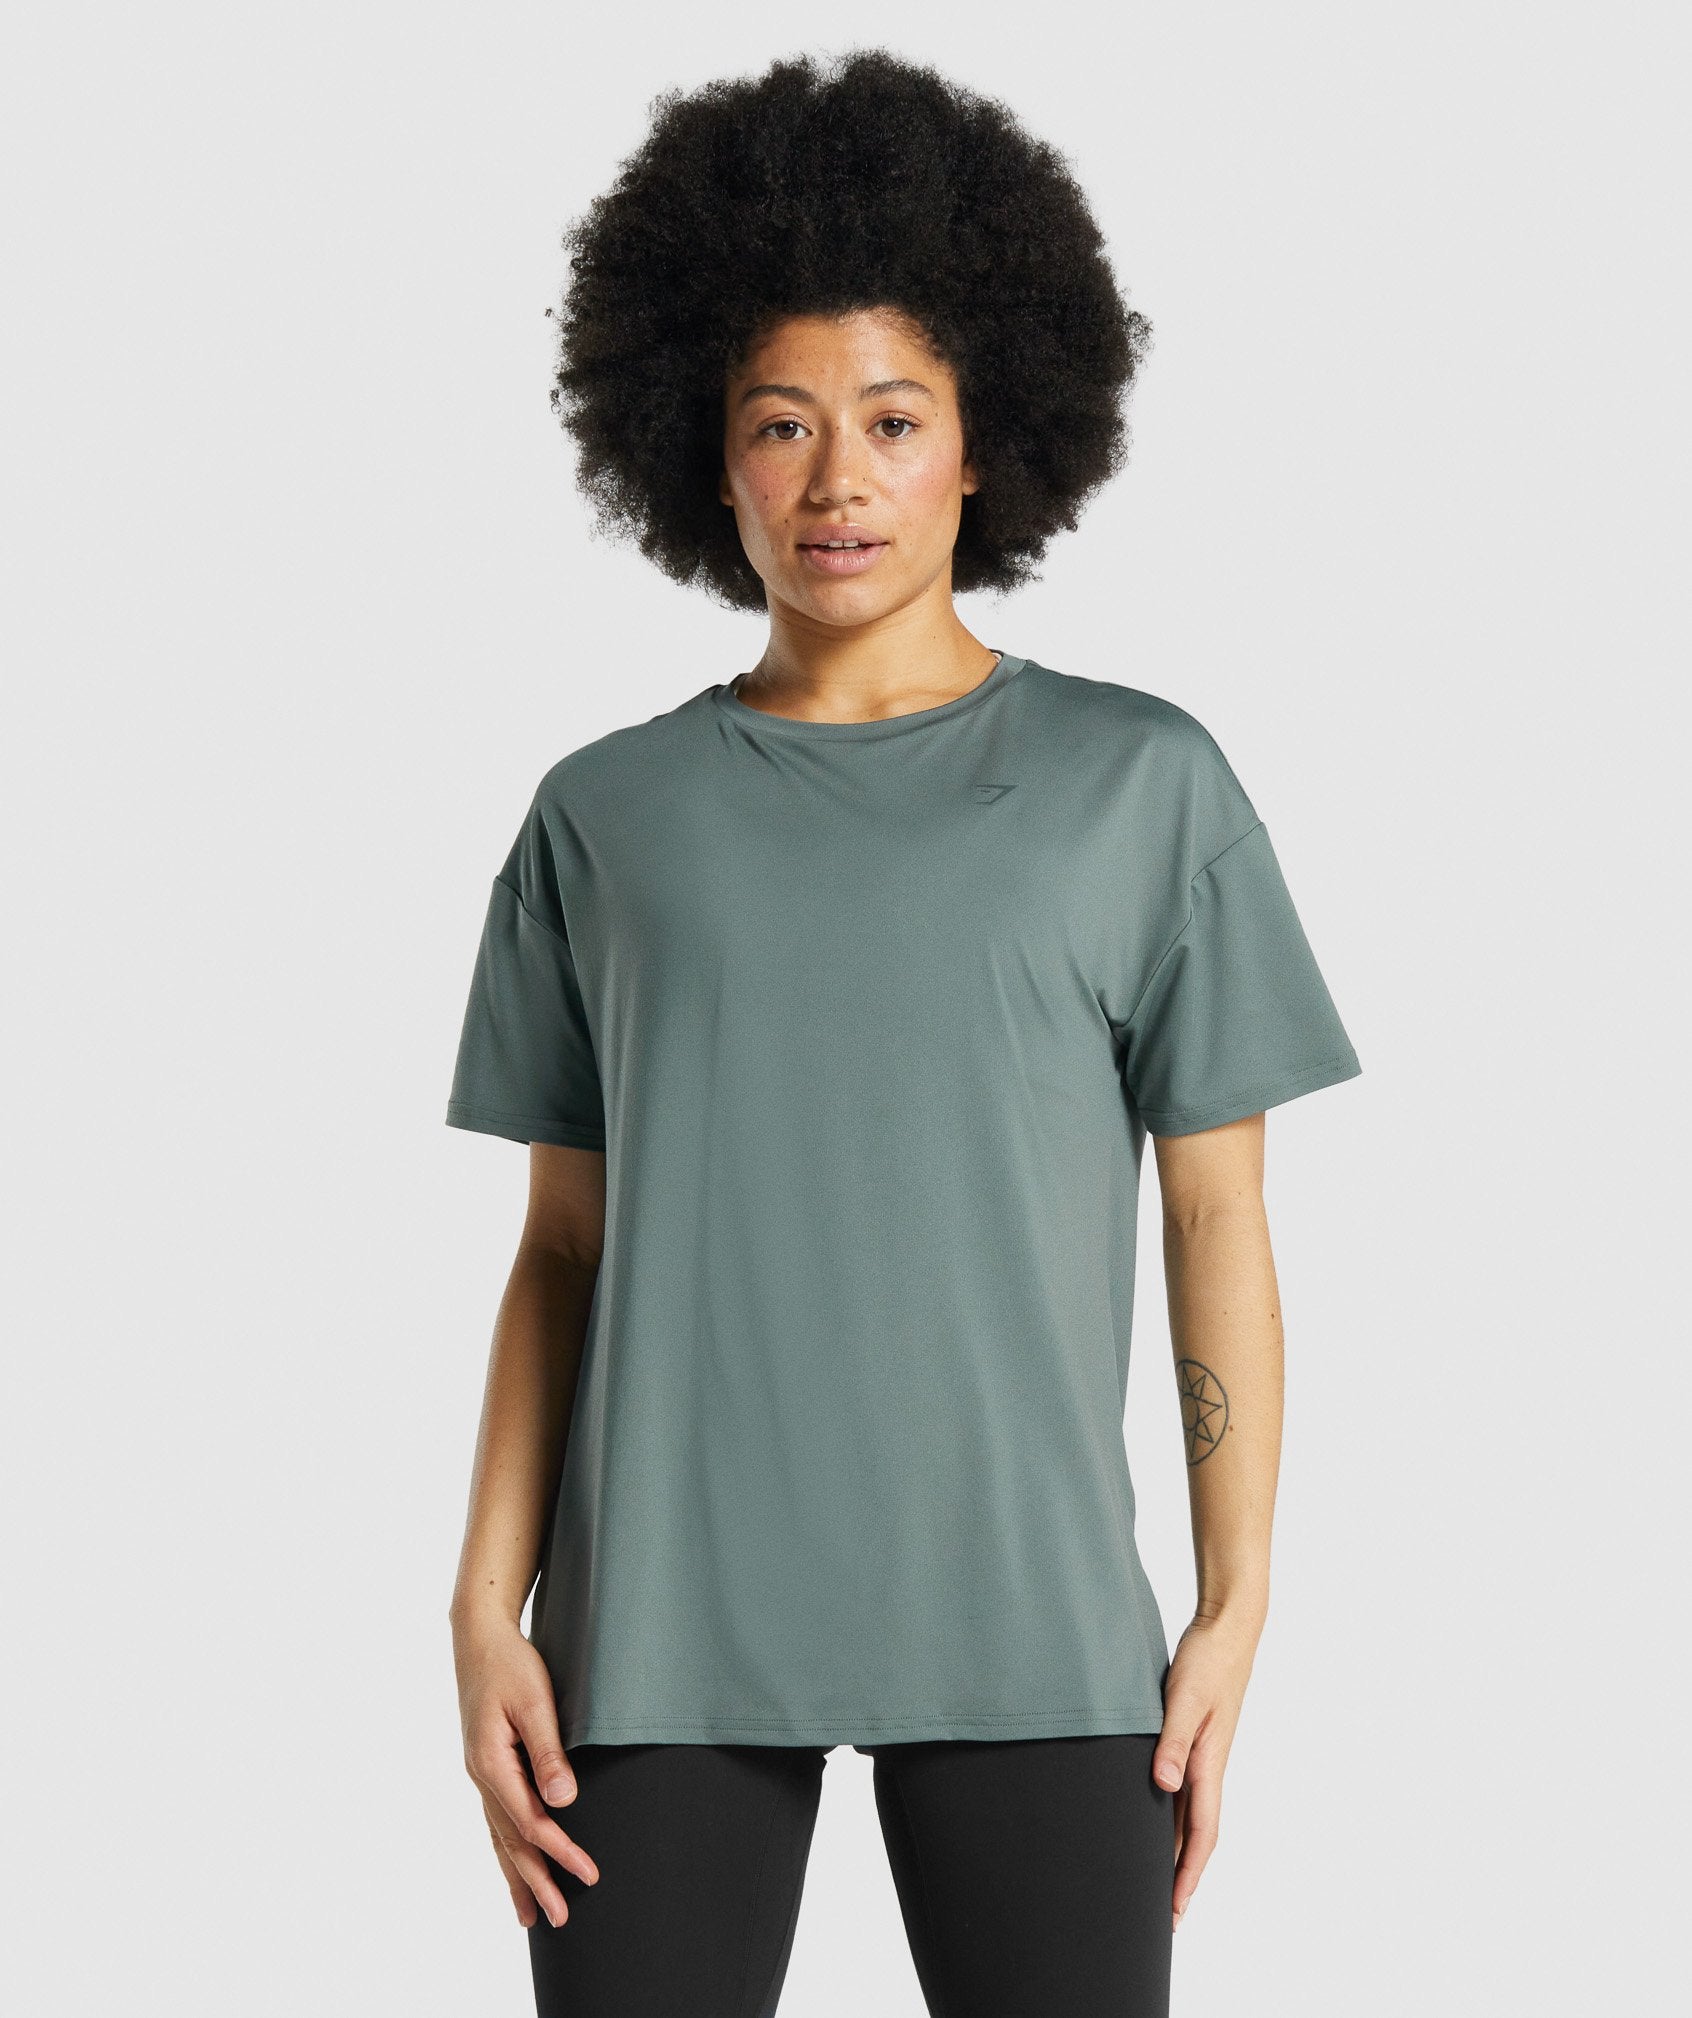 Gymshark Whitney Oversized T-Shirt - Eucalyptus – Client 446 100K